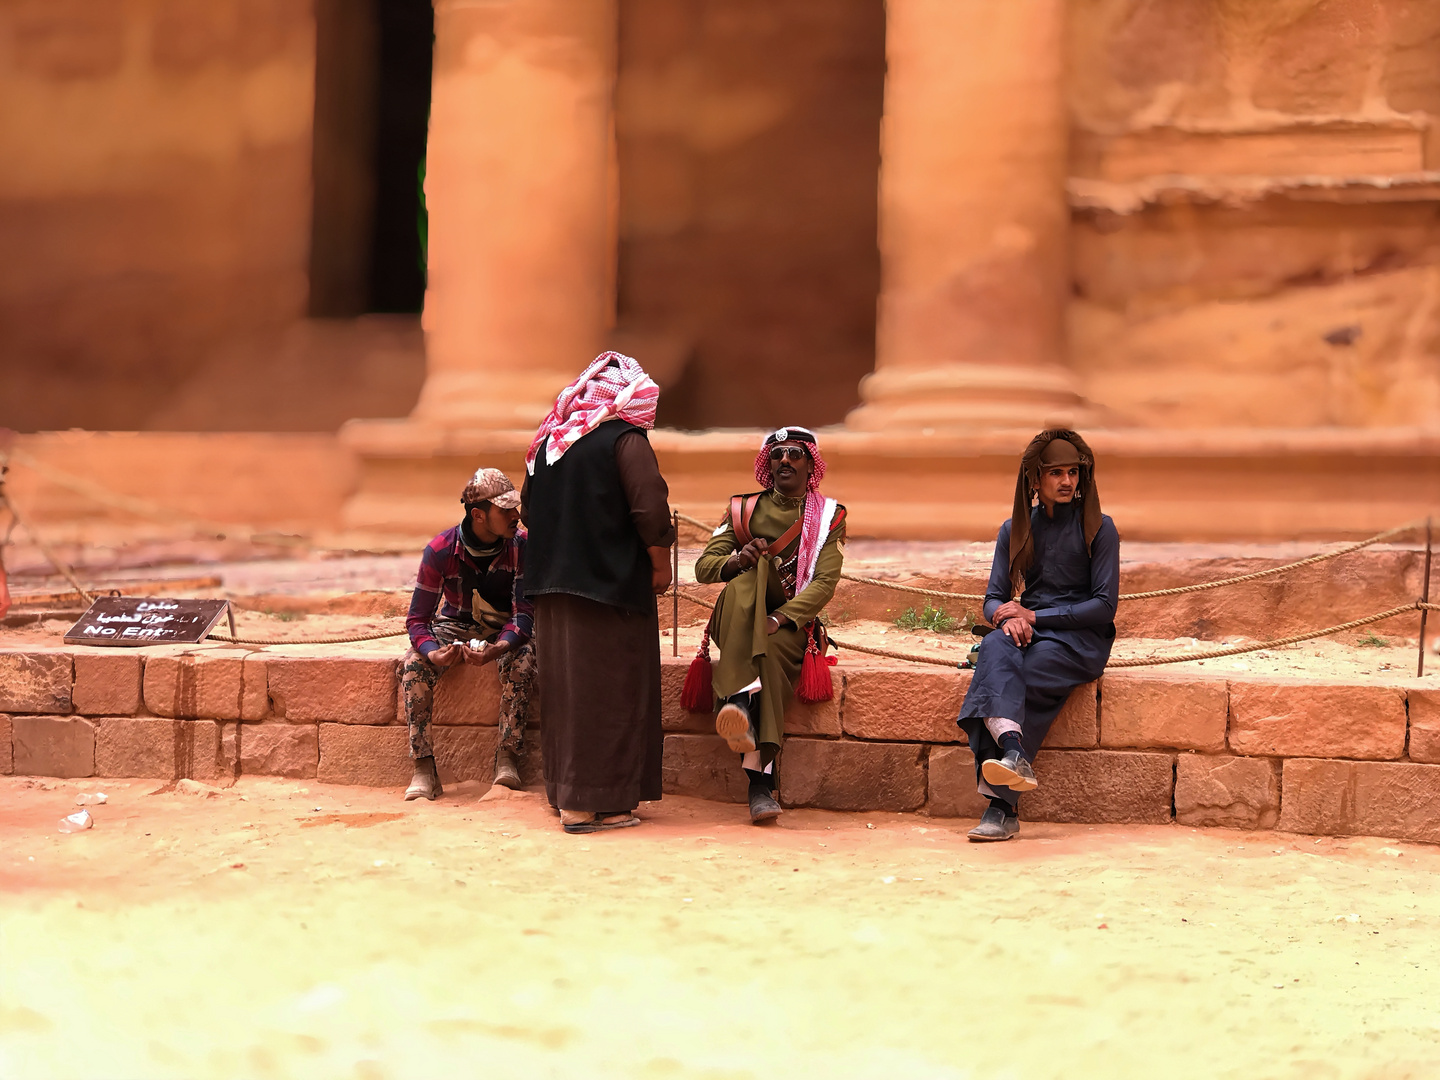 Scene at Petra - Szene in Petra